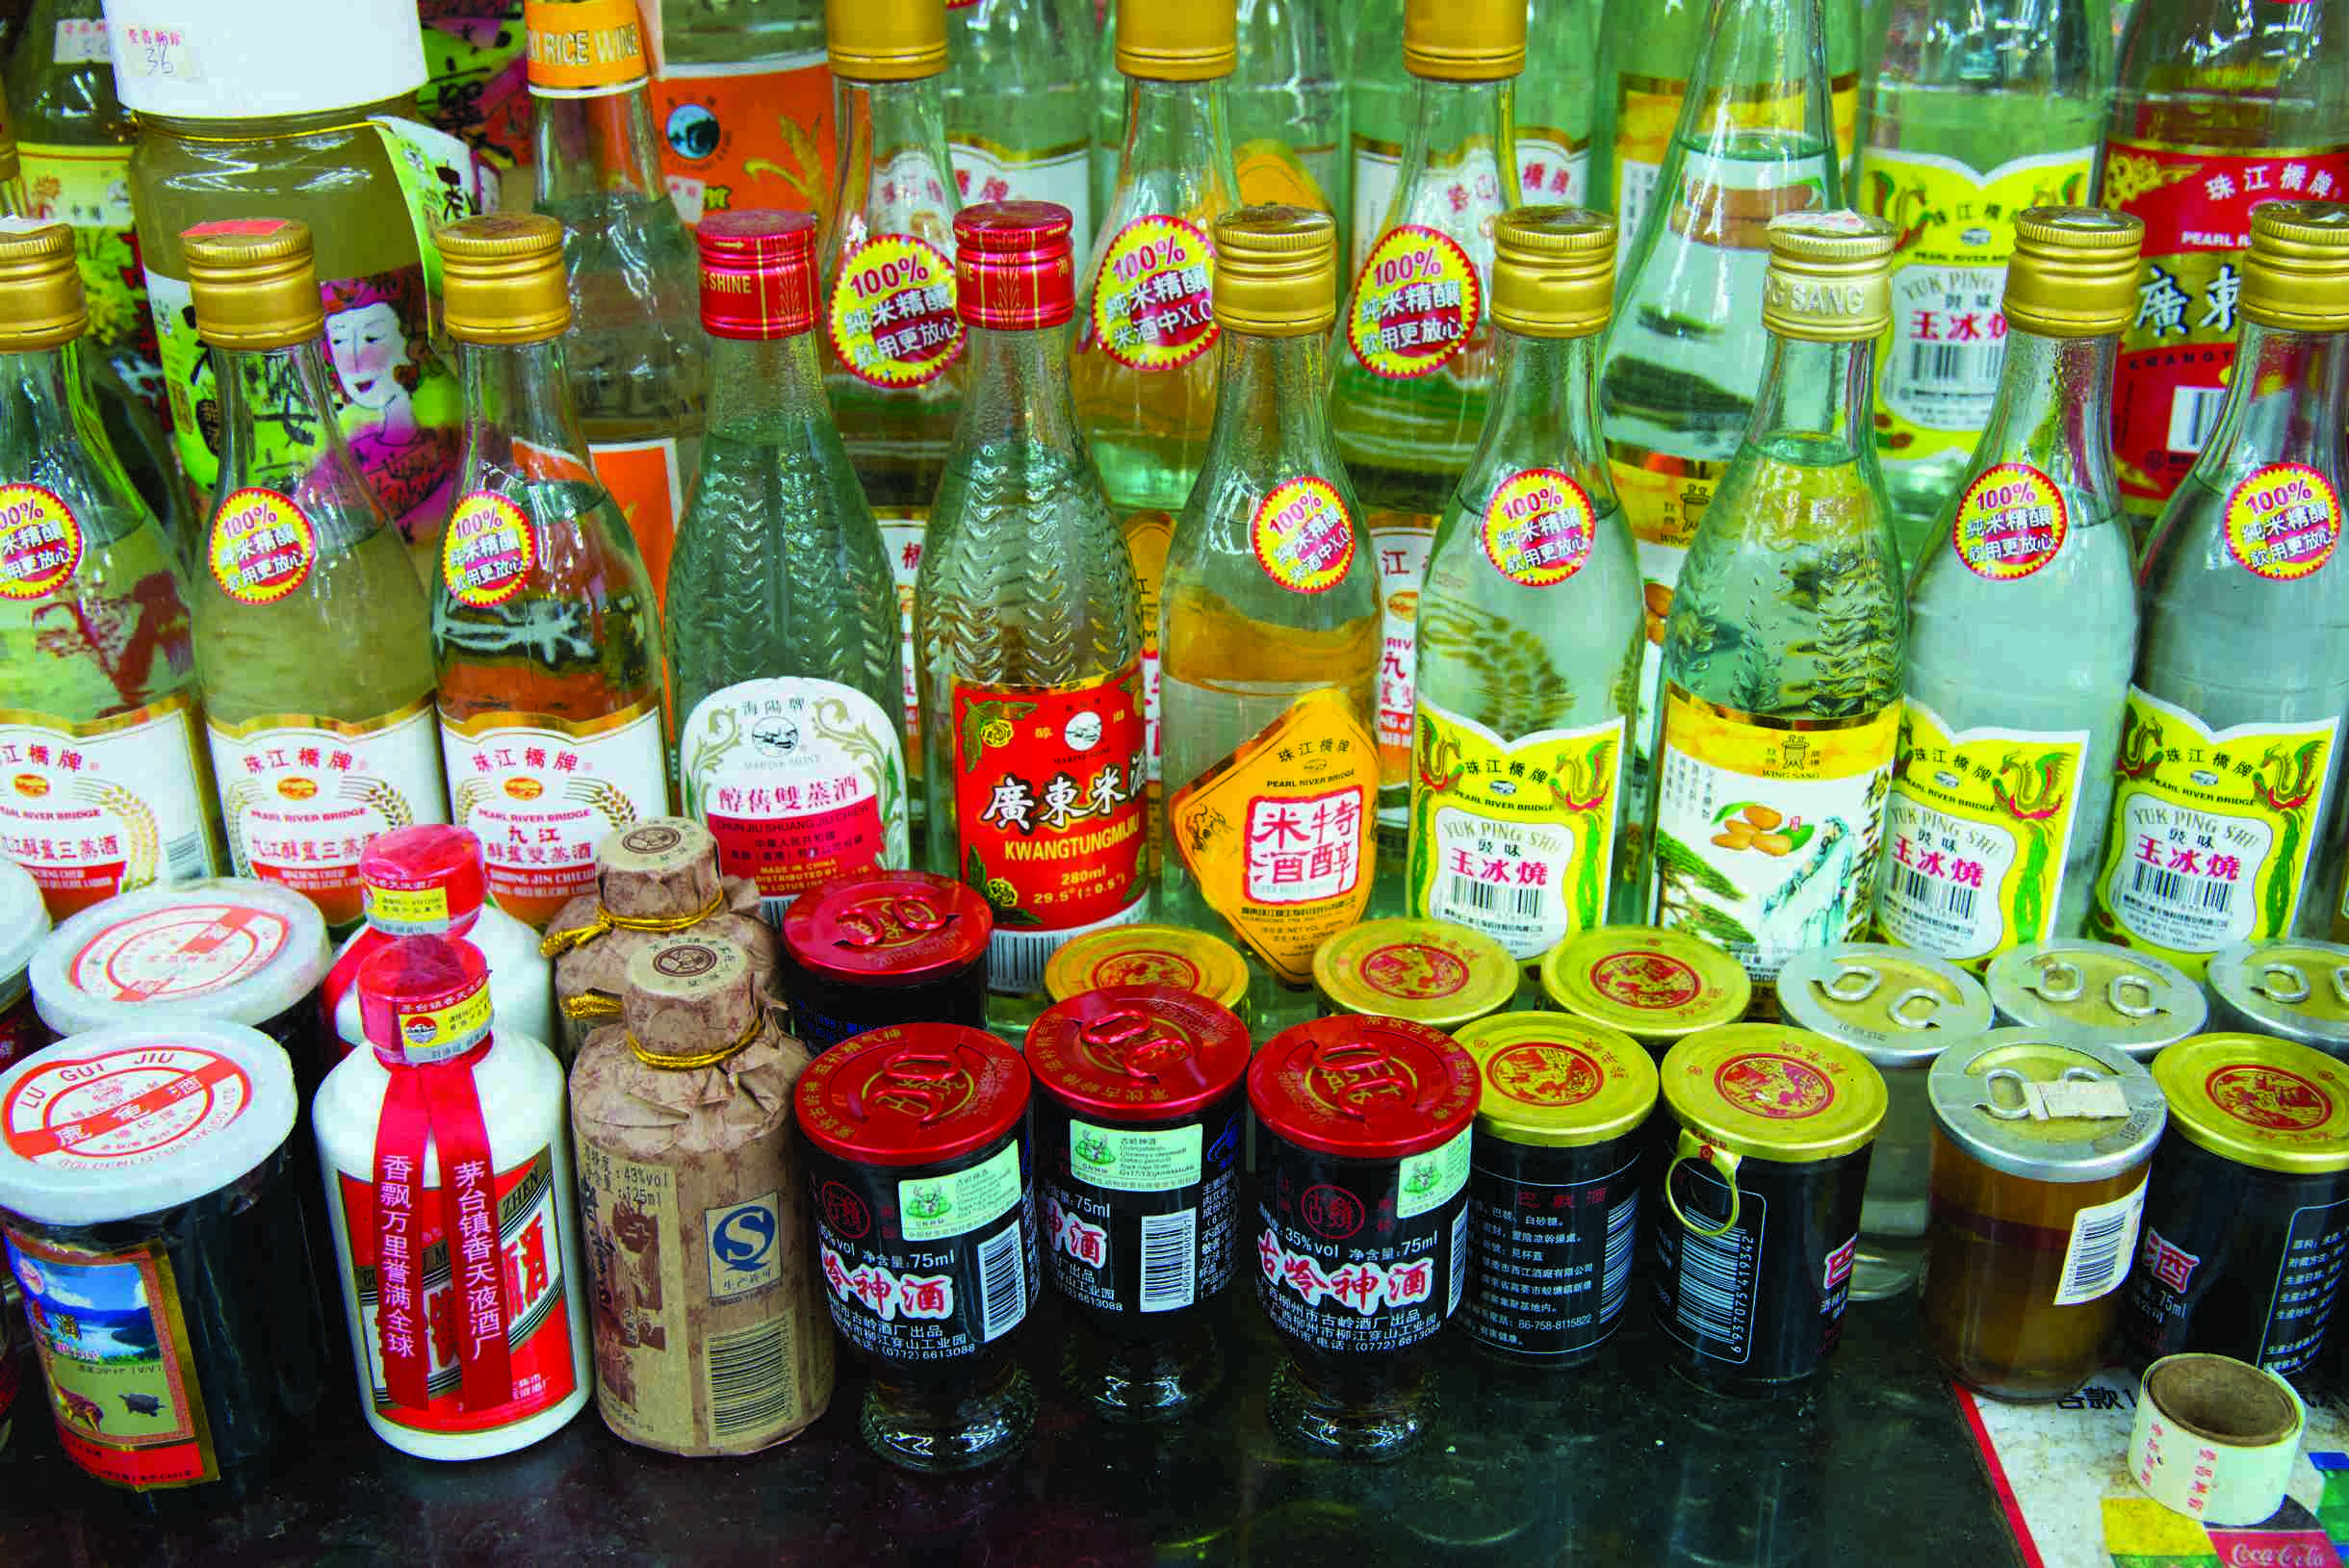 中式酒類繁多，入饌、酬神、獨酌、宴客都有其獨特包裝。